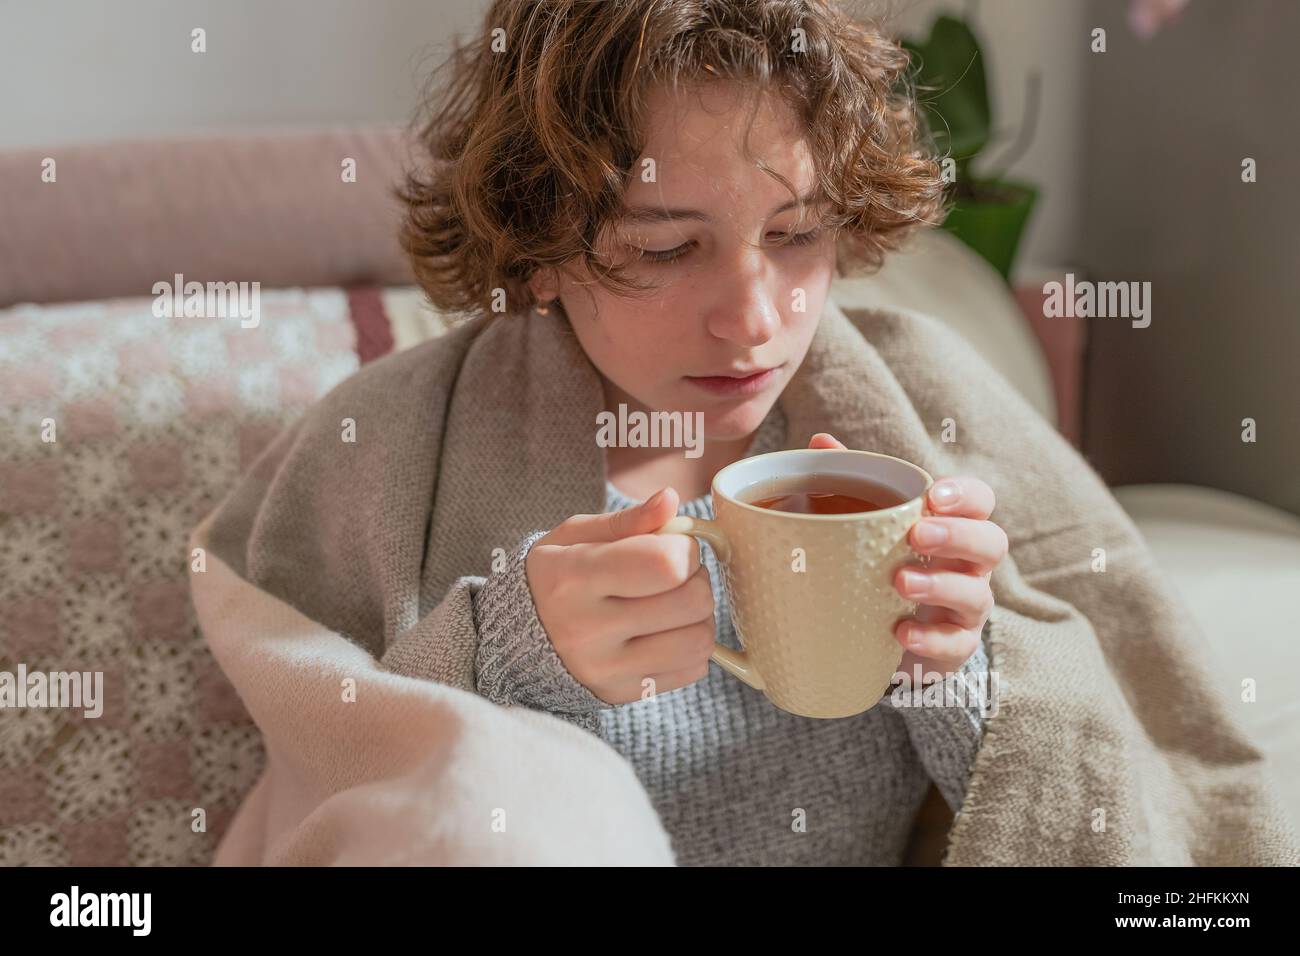 Gefrorene junge Frau in eine warme Decke eingewickelt trinken heißen Kräuter-Vitamin-Tee zu wärmen oder eine Erkältung zu behandeln Stockfoto